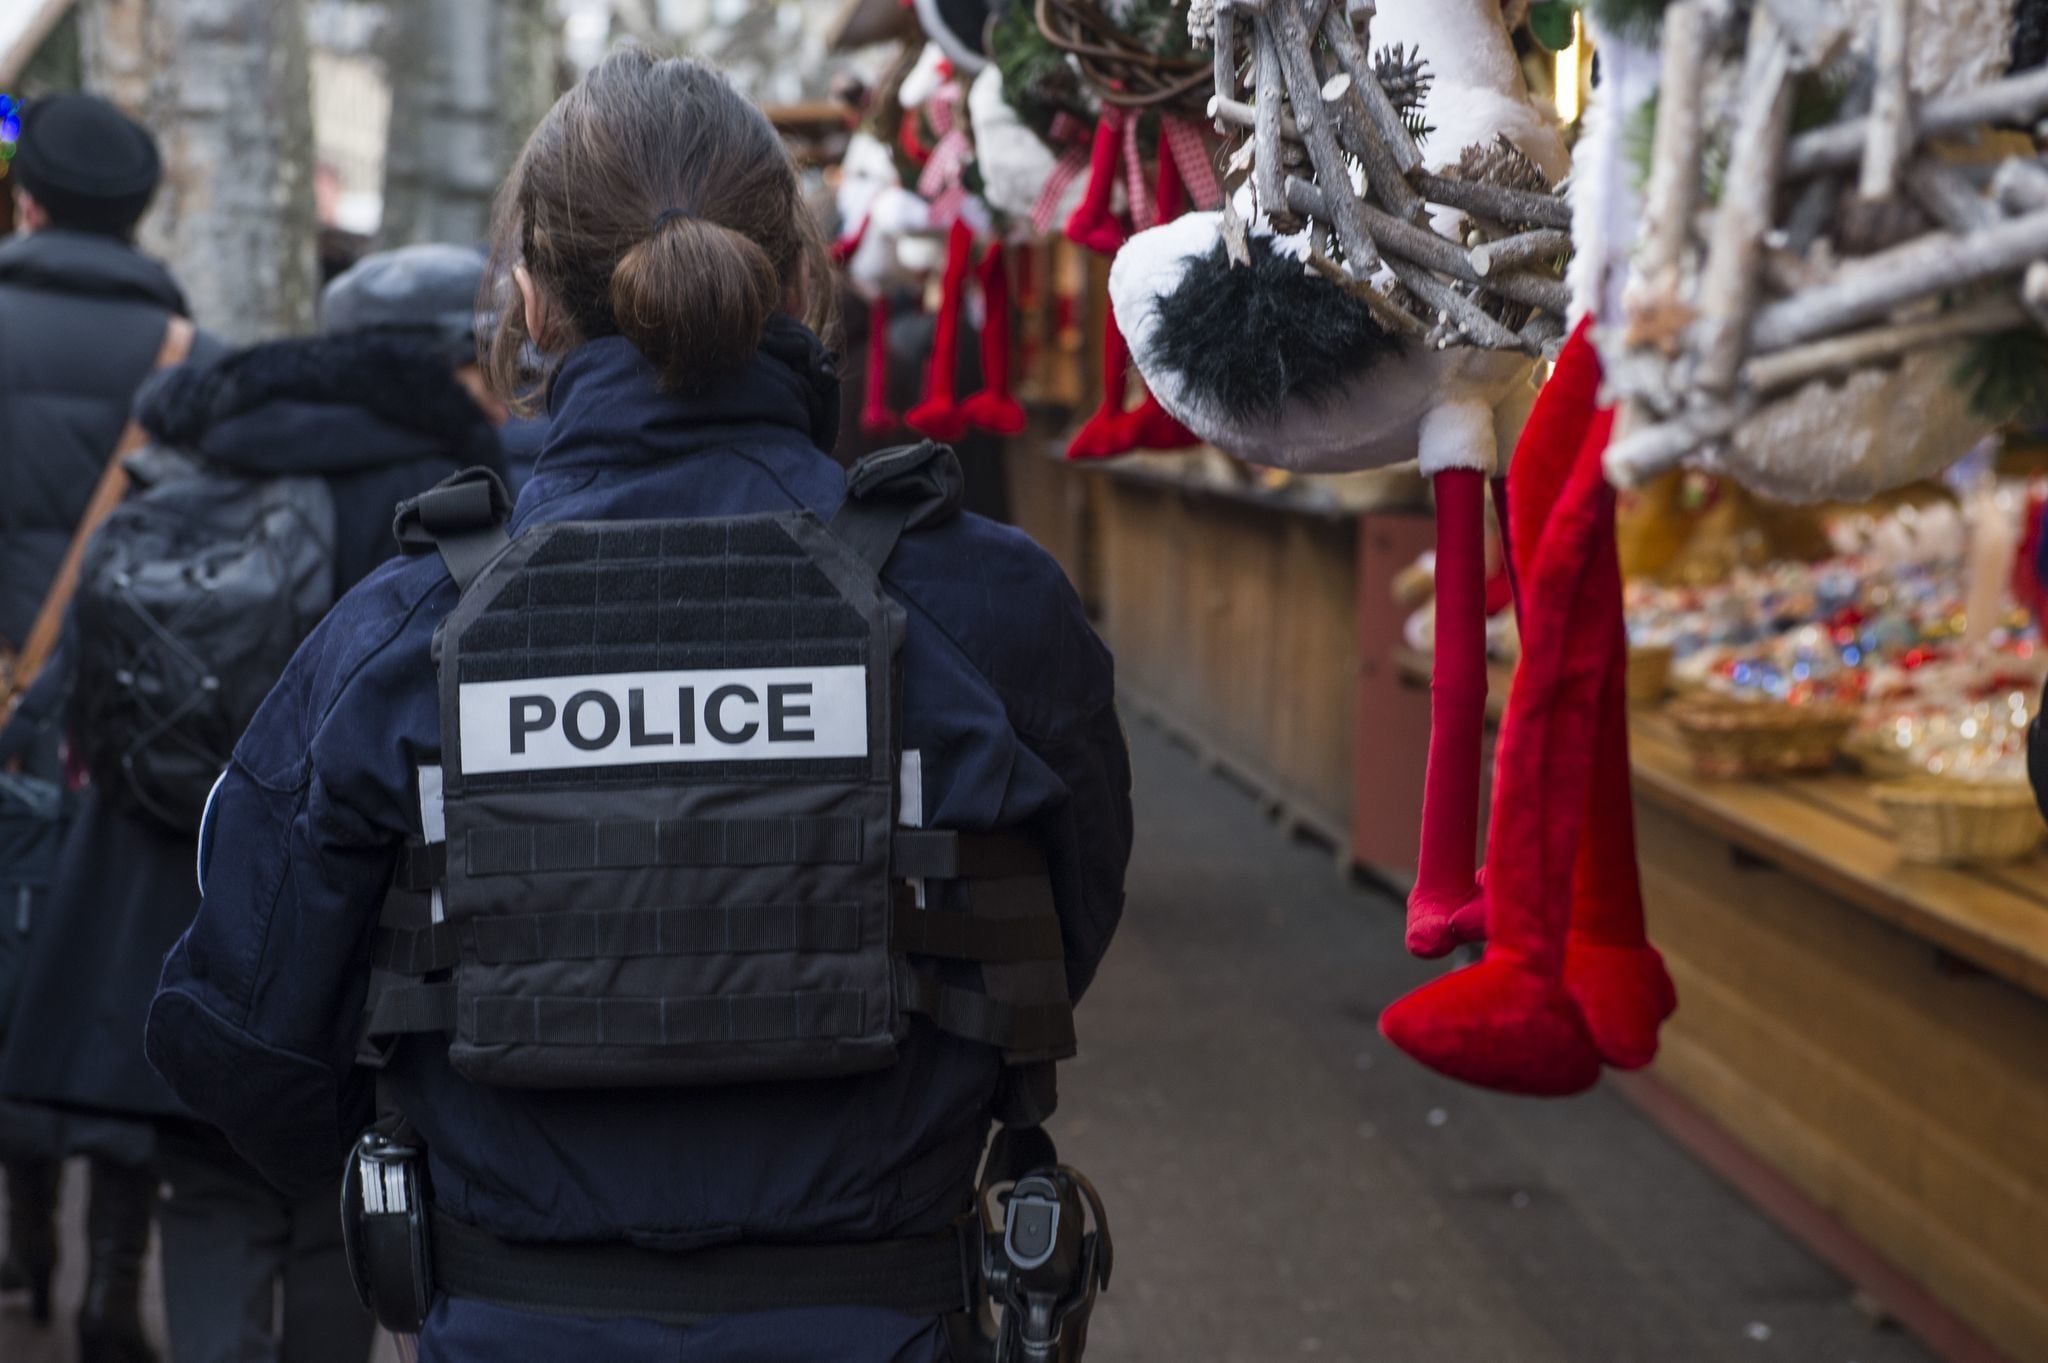 La police en patrouille, au Marché de Noël de Strasbourg en 2016 (Photo Pascal Bastien / Divergence)